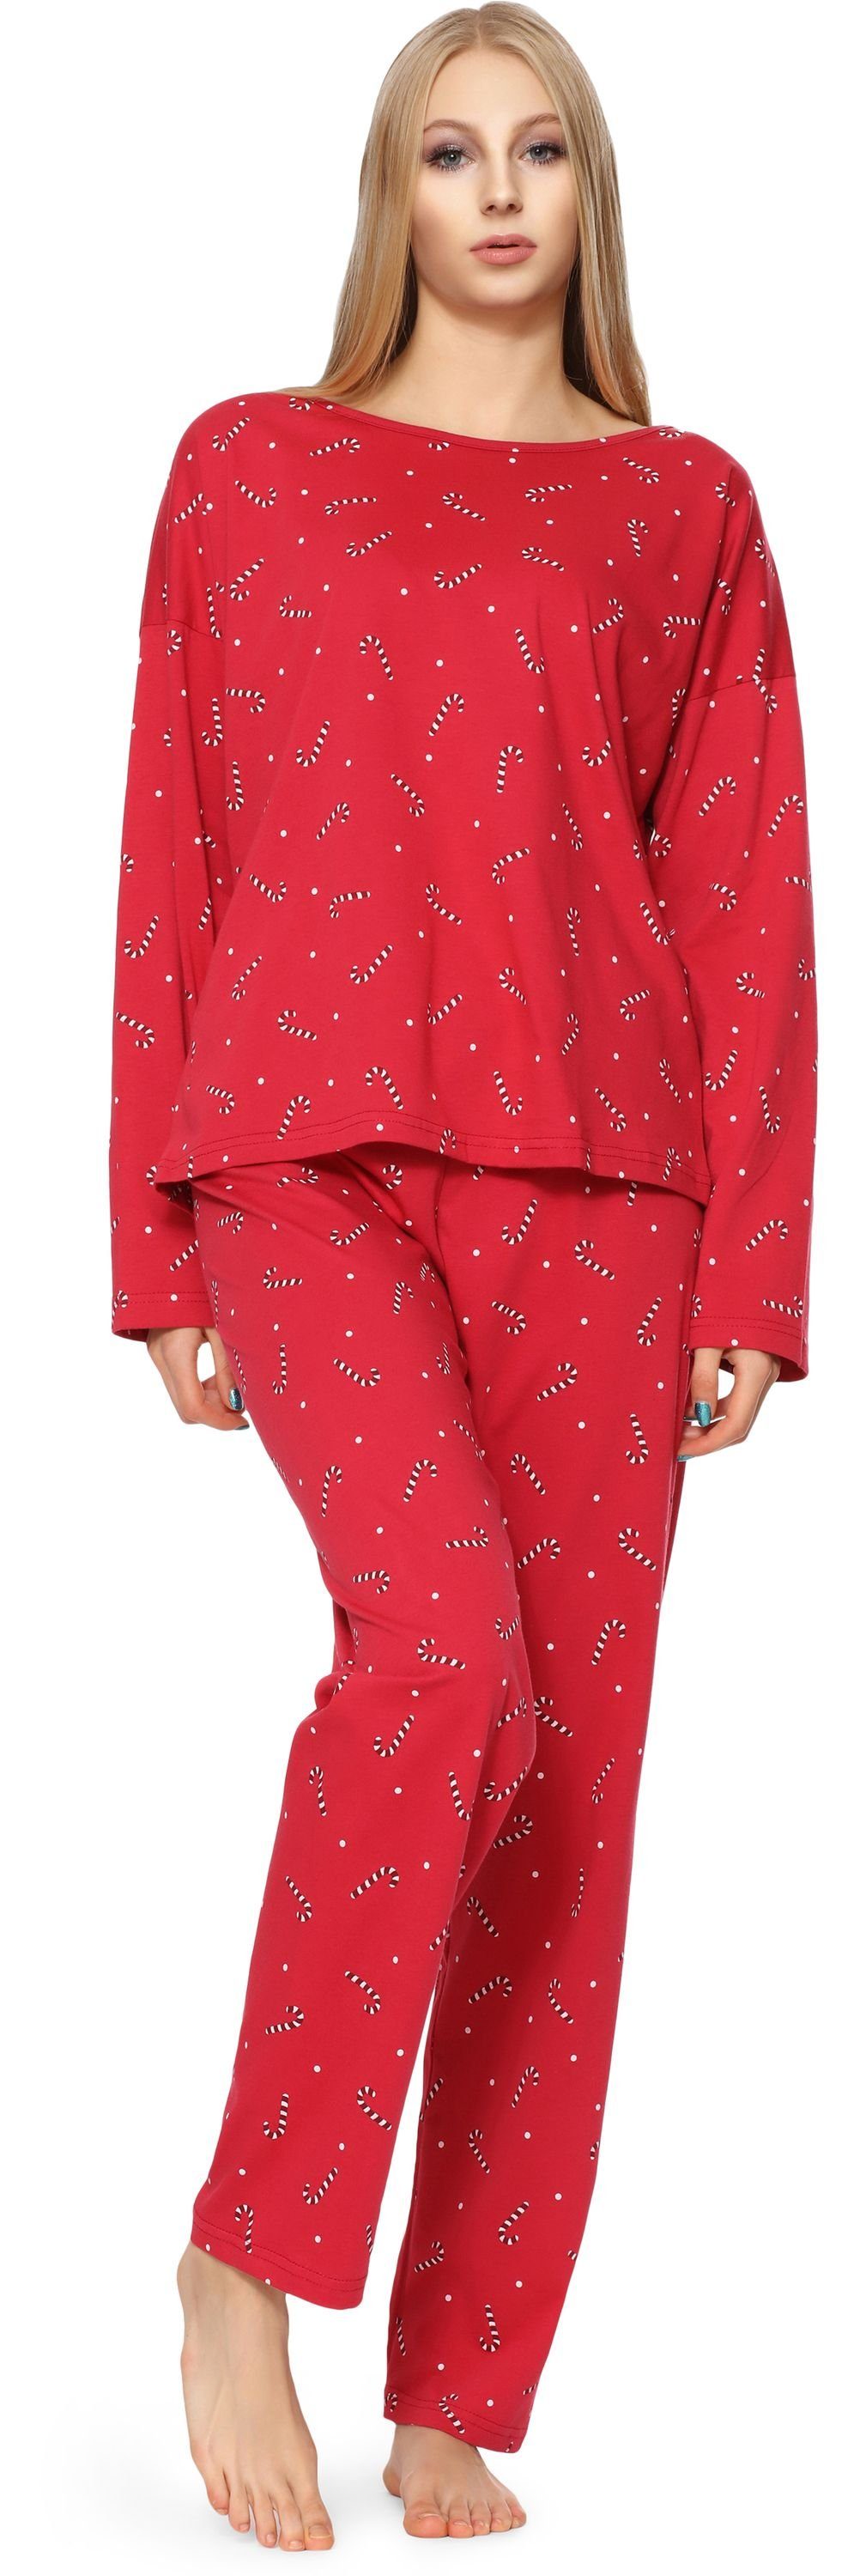 Merry Style Schlafanzug Damen Schlafanzug Burgund-1C MSTR1196